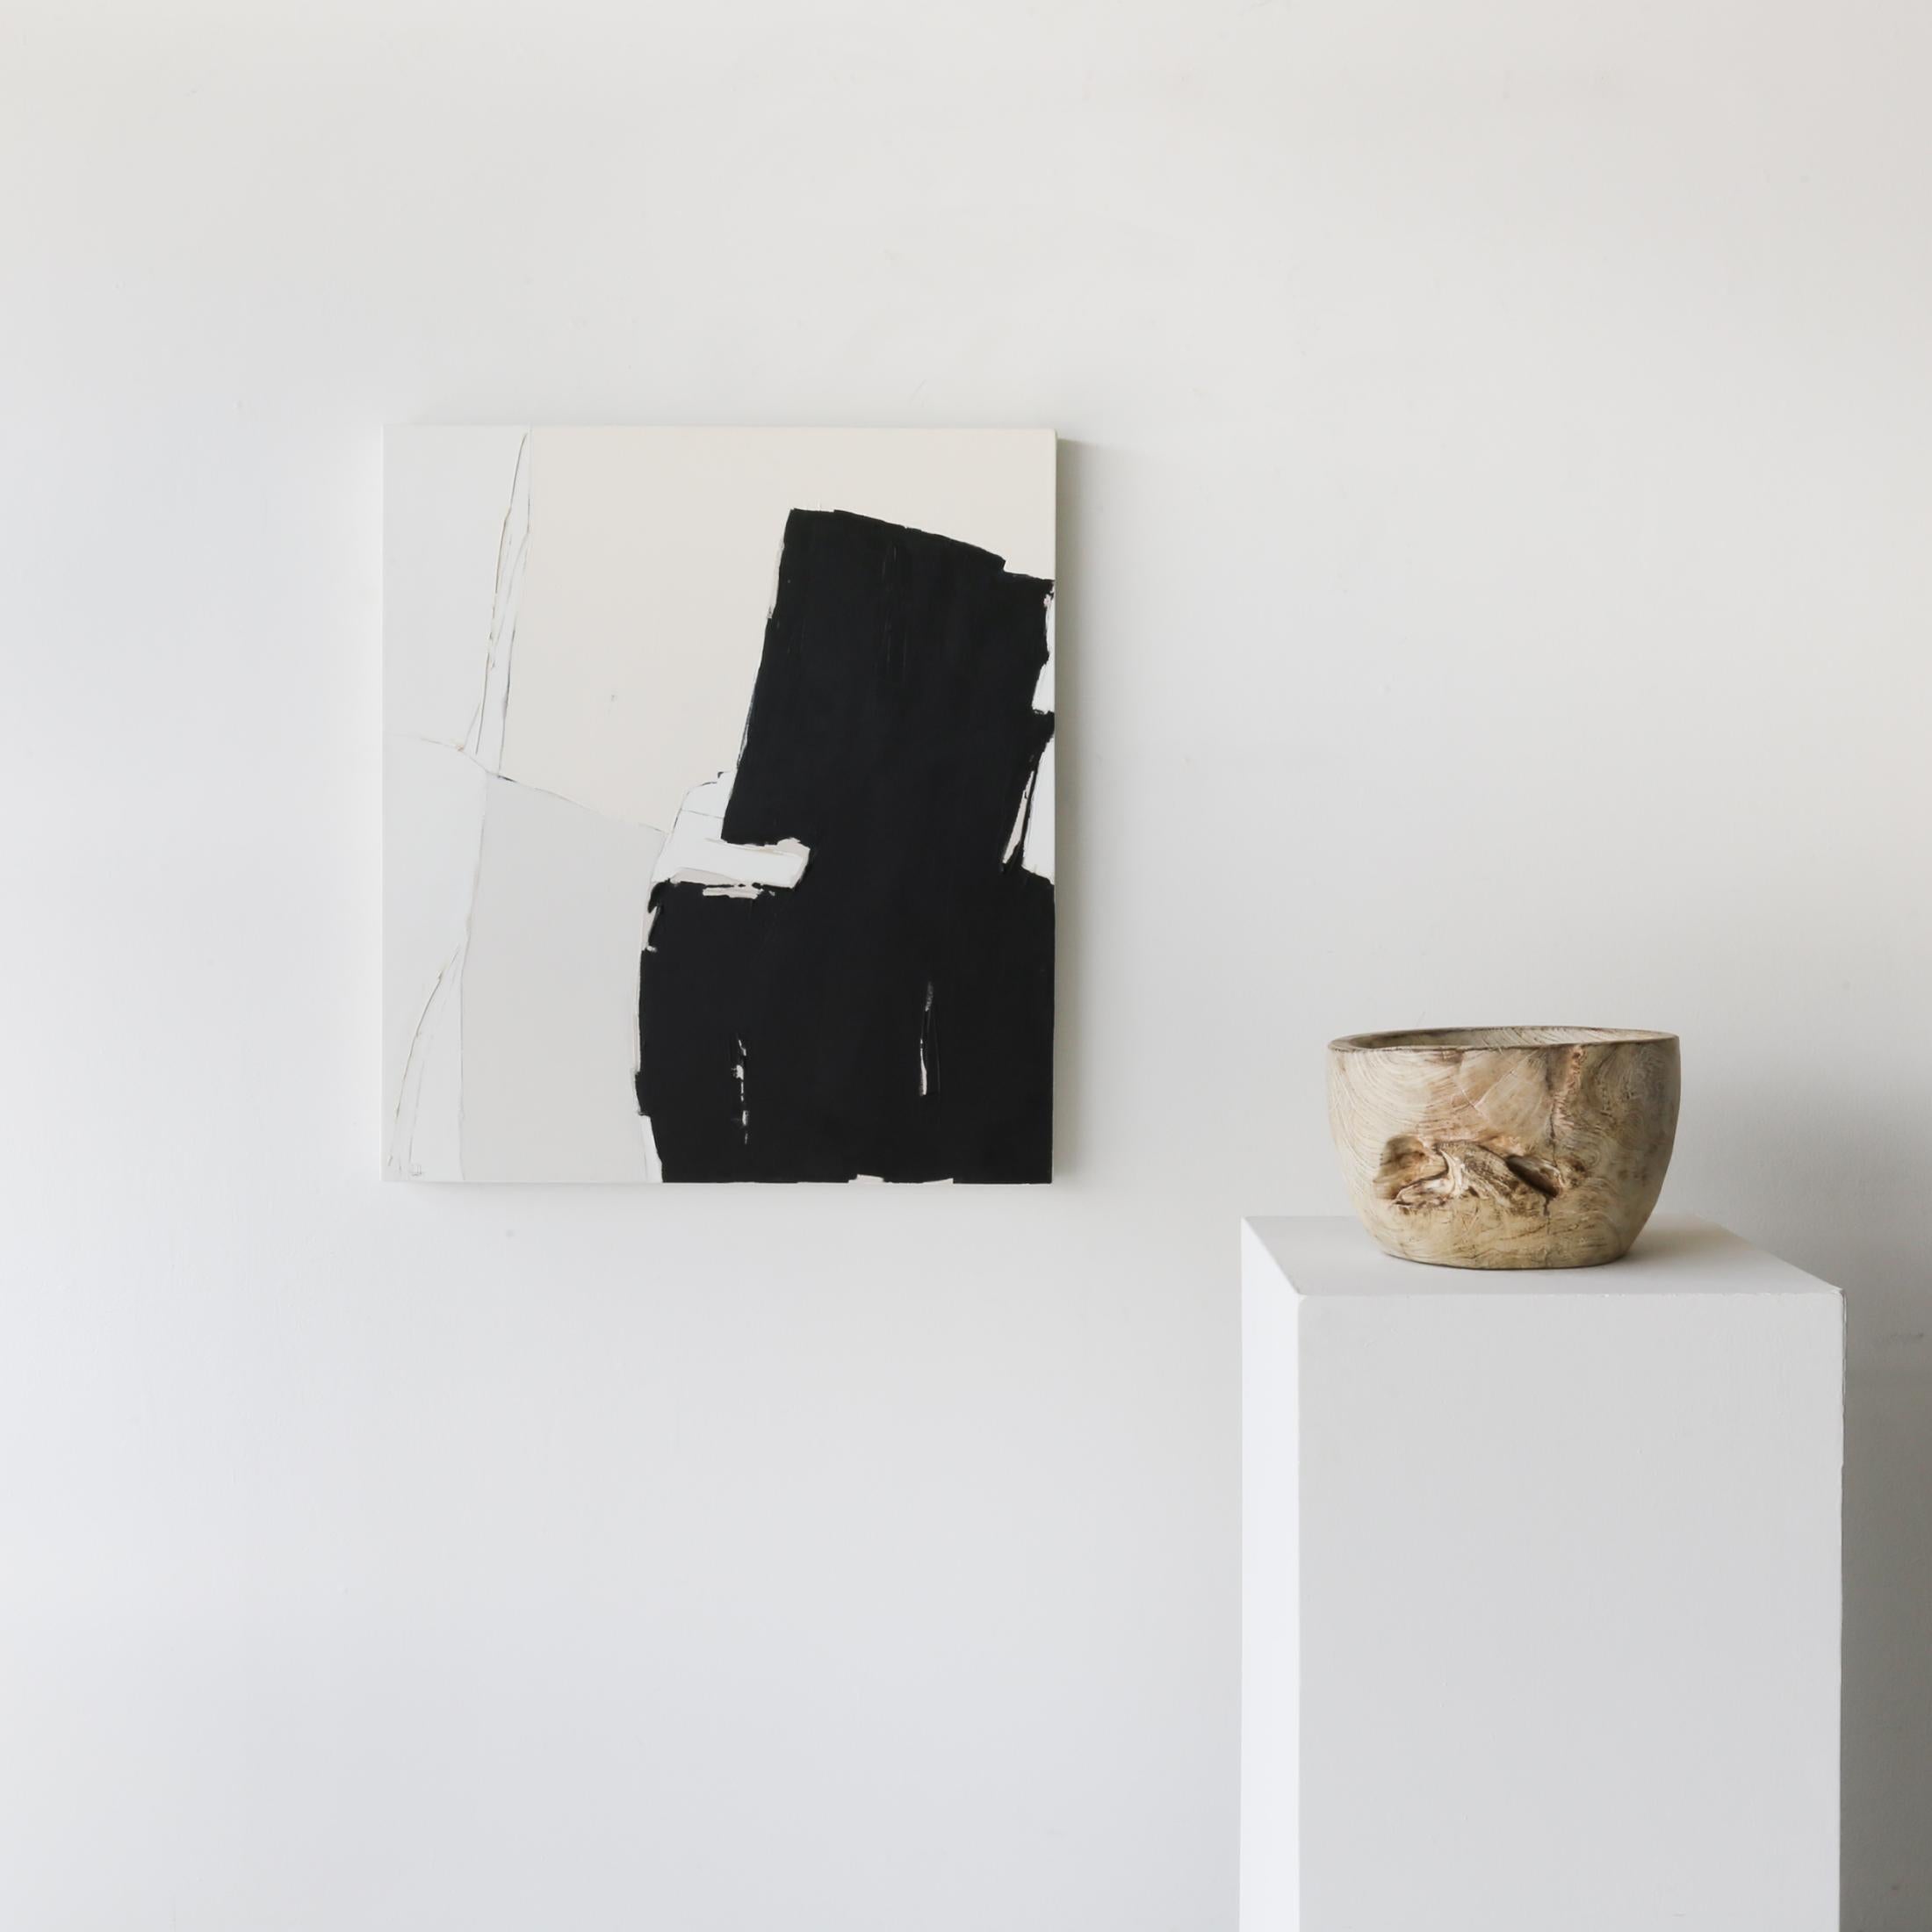 Holly Addi est une artiste basée à Salt Lake City dont les travaux s'inscrivent dans la lignée des artistes de l'expressionnisme abstrait qui l'ont précédée, comme Helen Frankenthaler et Clyfford Still, en s'appuyant de la même manière sur le